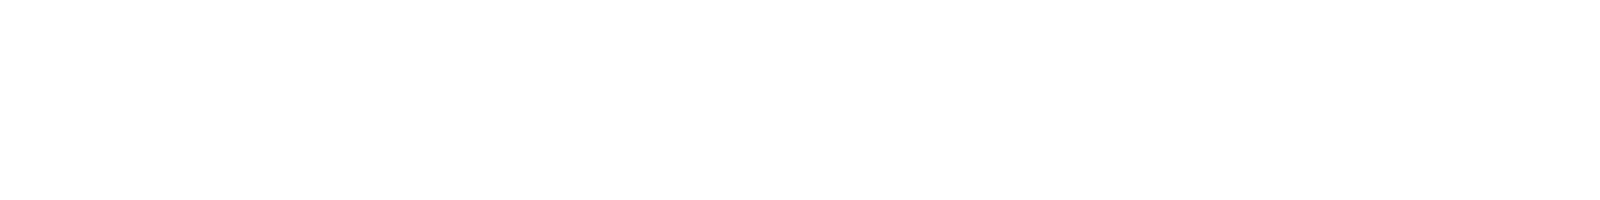 adamevents logo geenruit